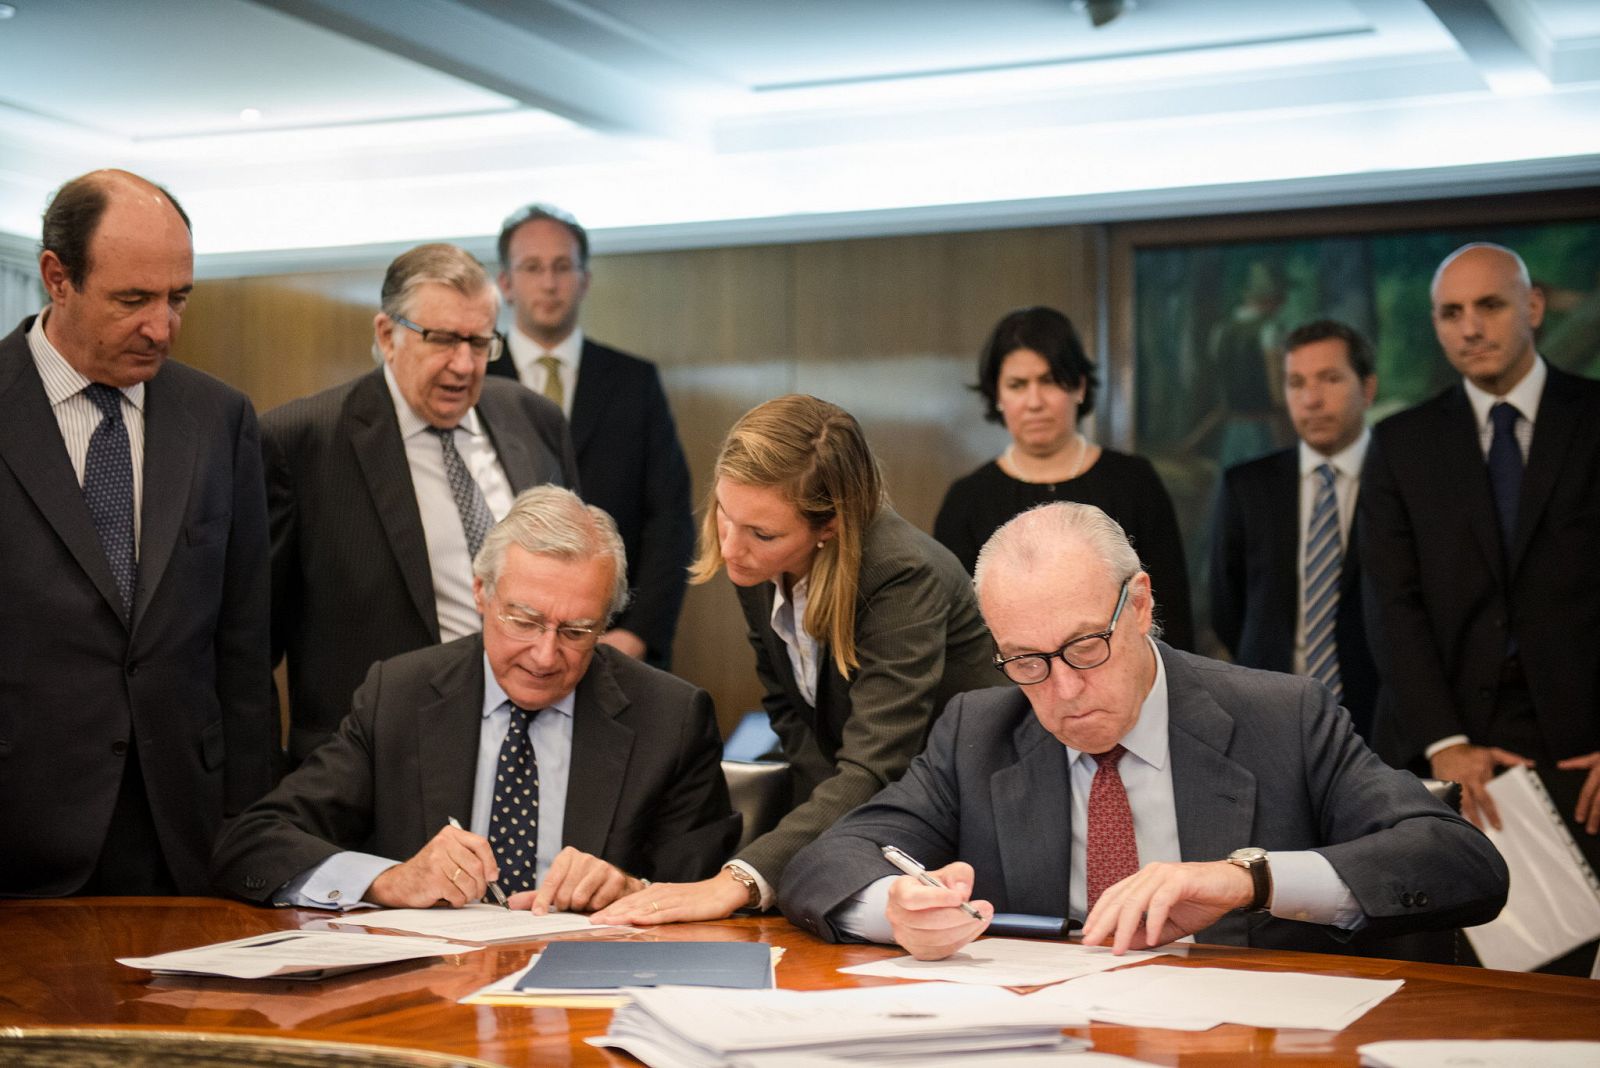 Nemesio Fernández Cuesta, director general de Negocios de Repsol, y Luis Suárez Lezo, secretario general, en la firma del acuerdo con el Gobierno argentino el 8 de mayo